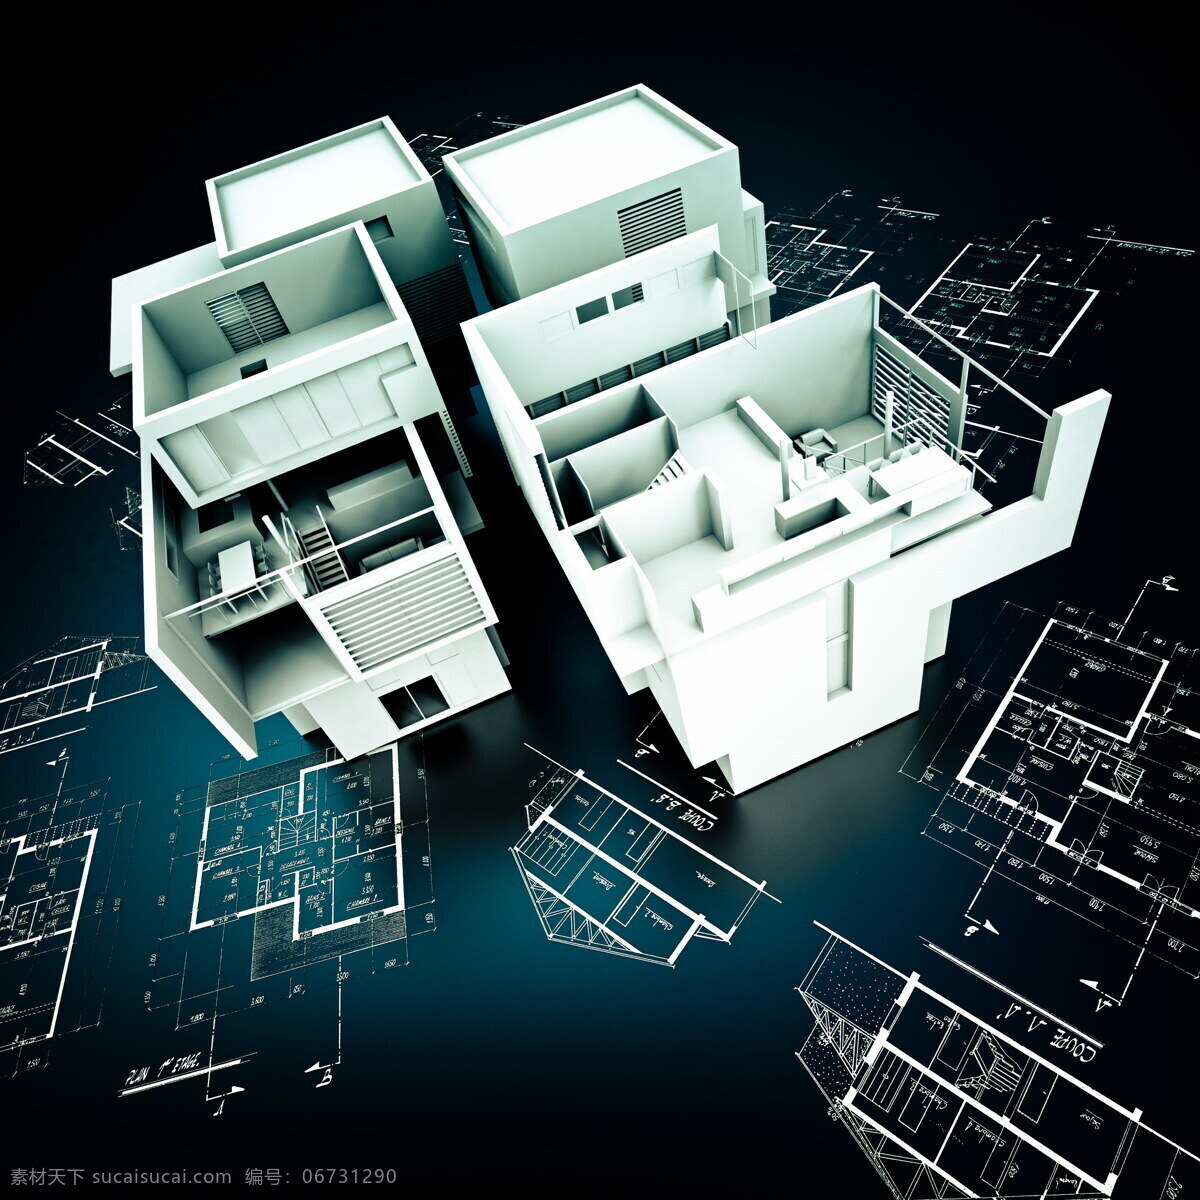 立体 建筑模型 图 图纸 房屋 3d建筑 建筑设计 环境家居